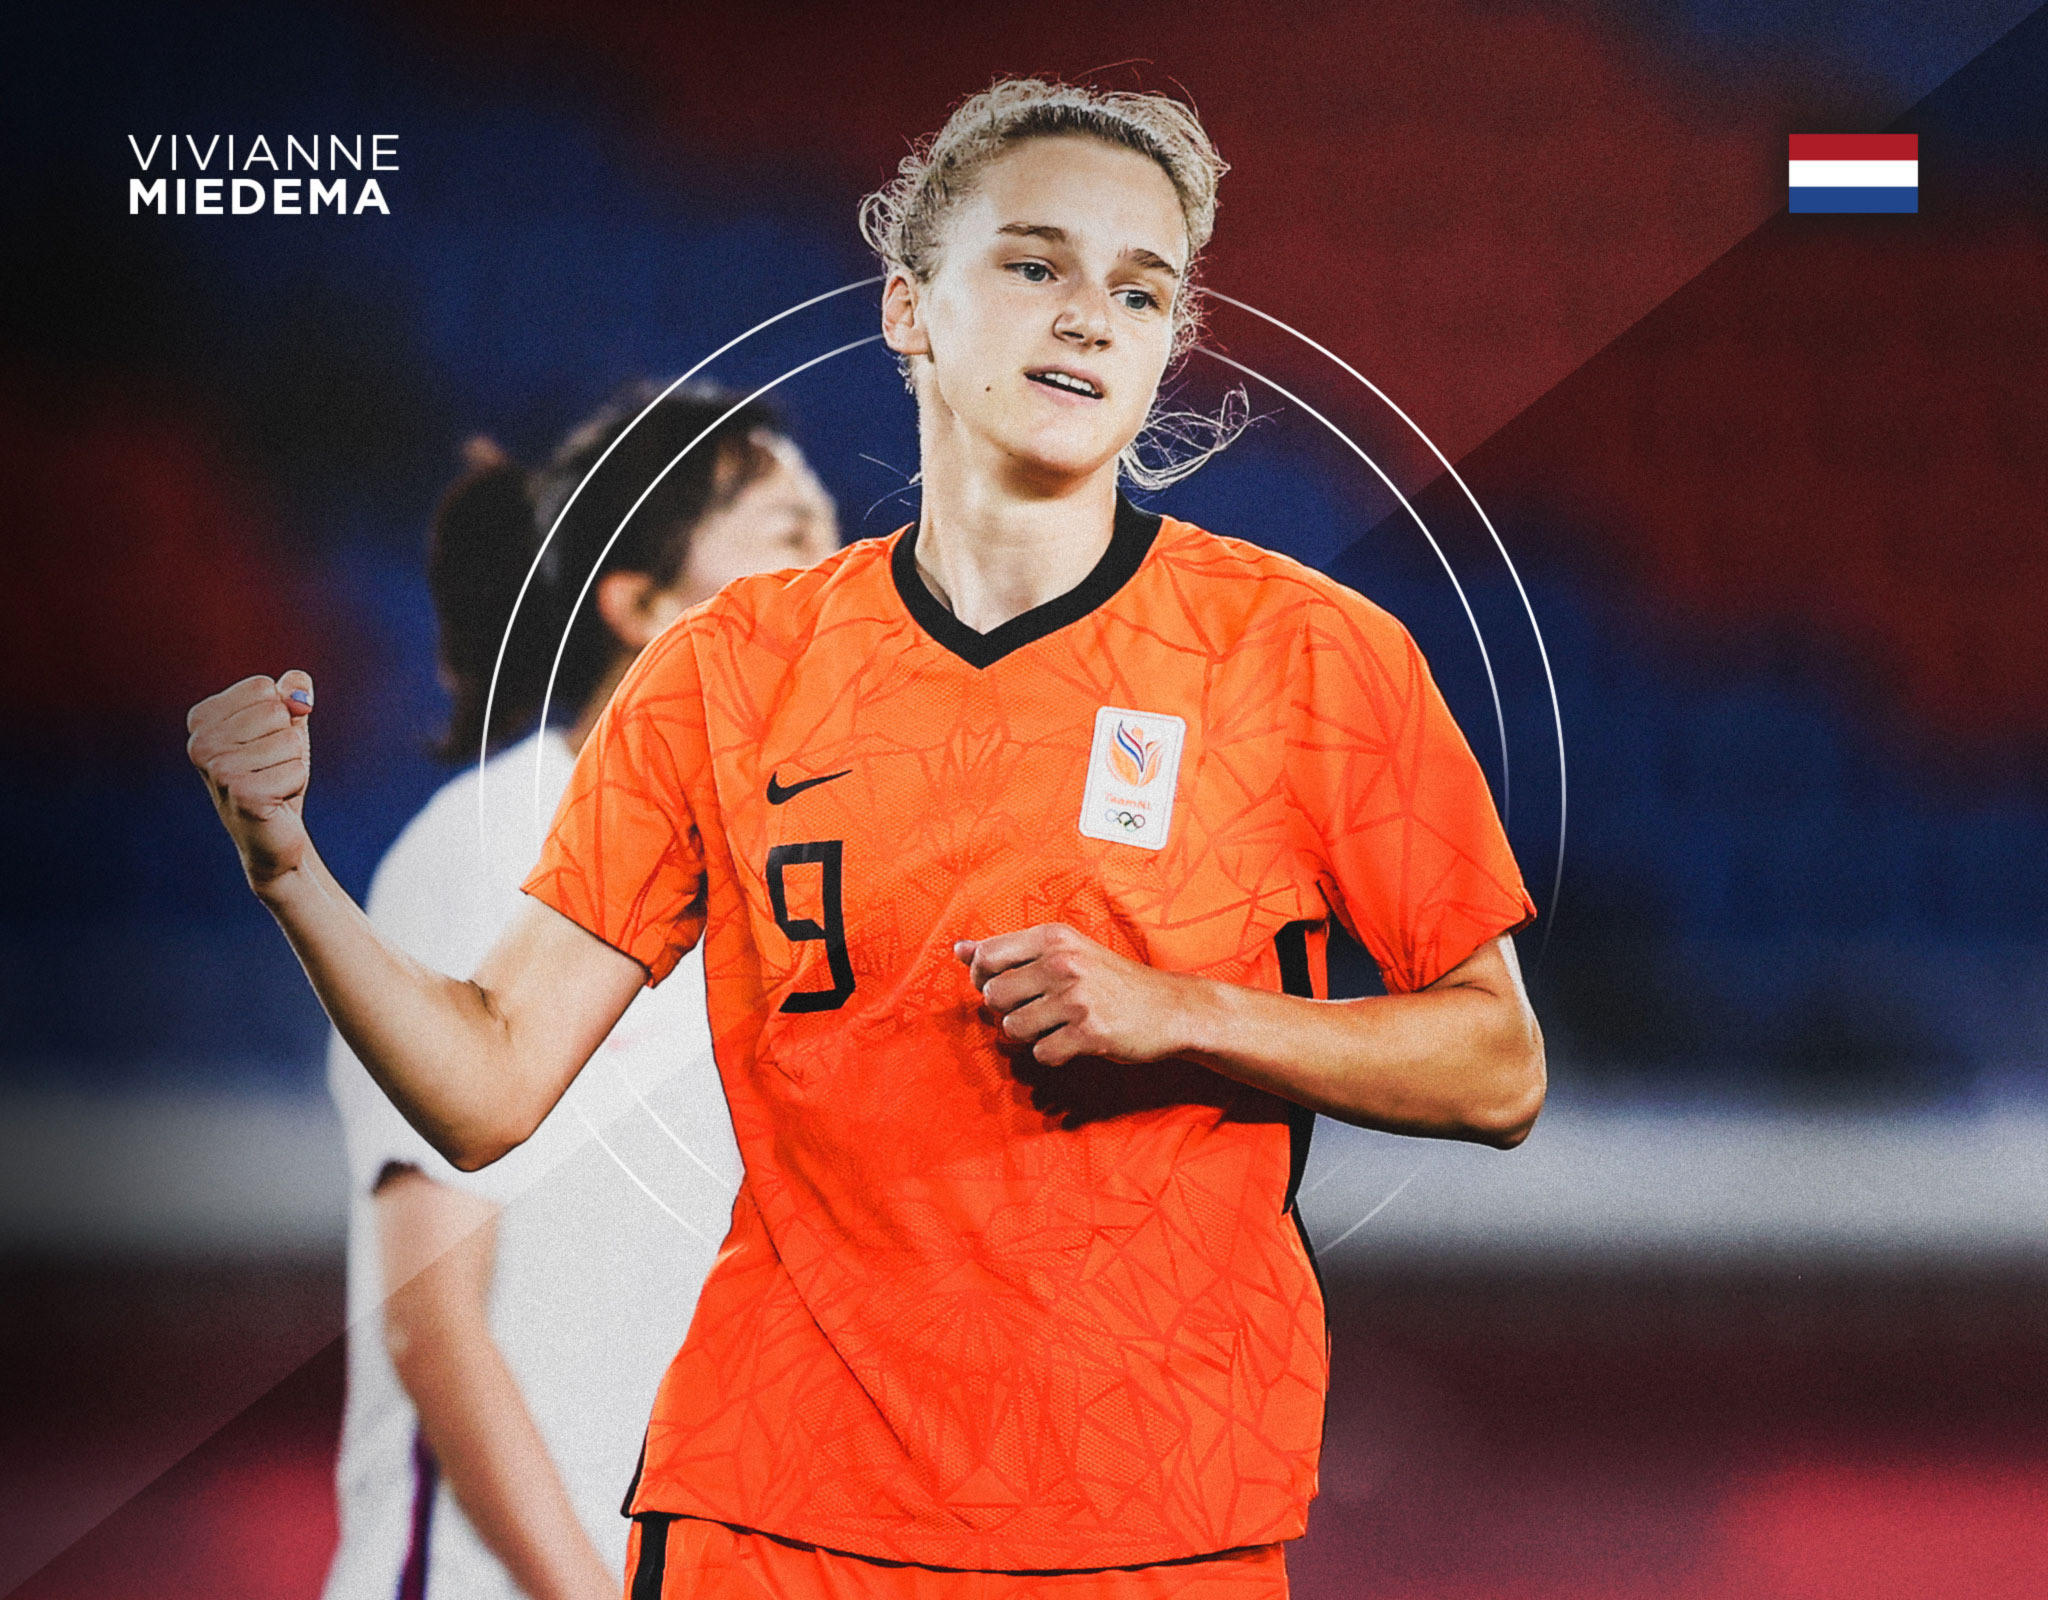 Viviane Miedema de Países Bajos en la Eurocopa Femenina 2022